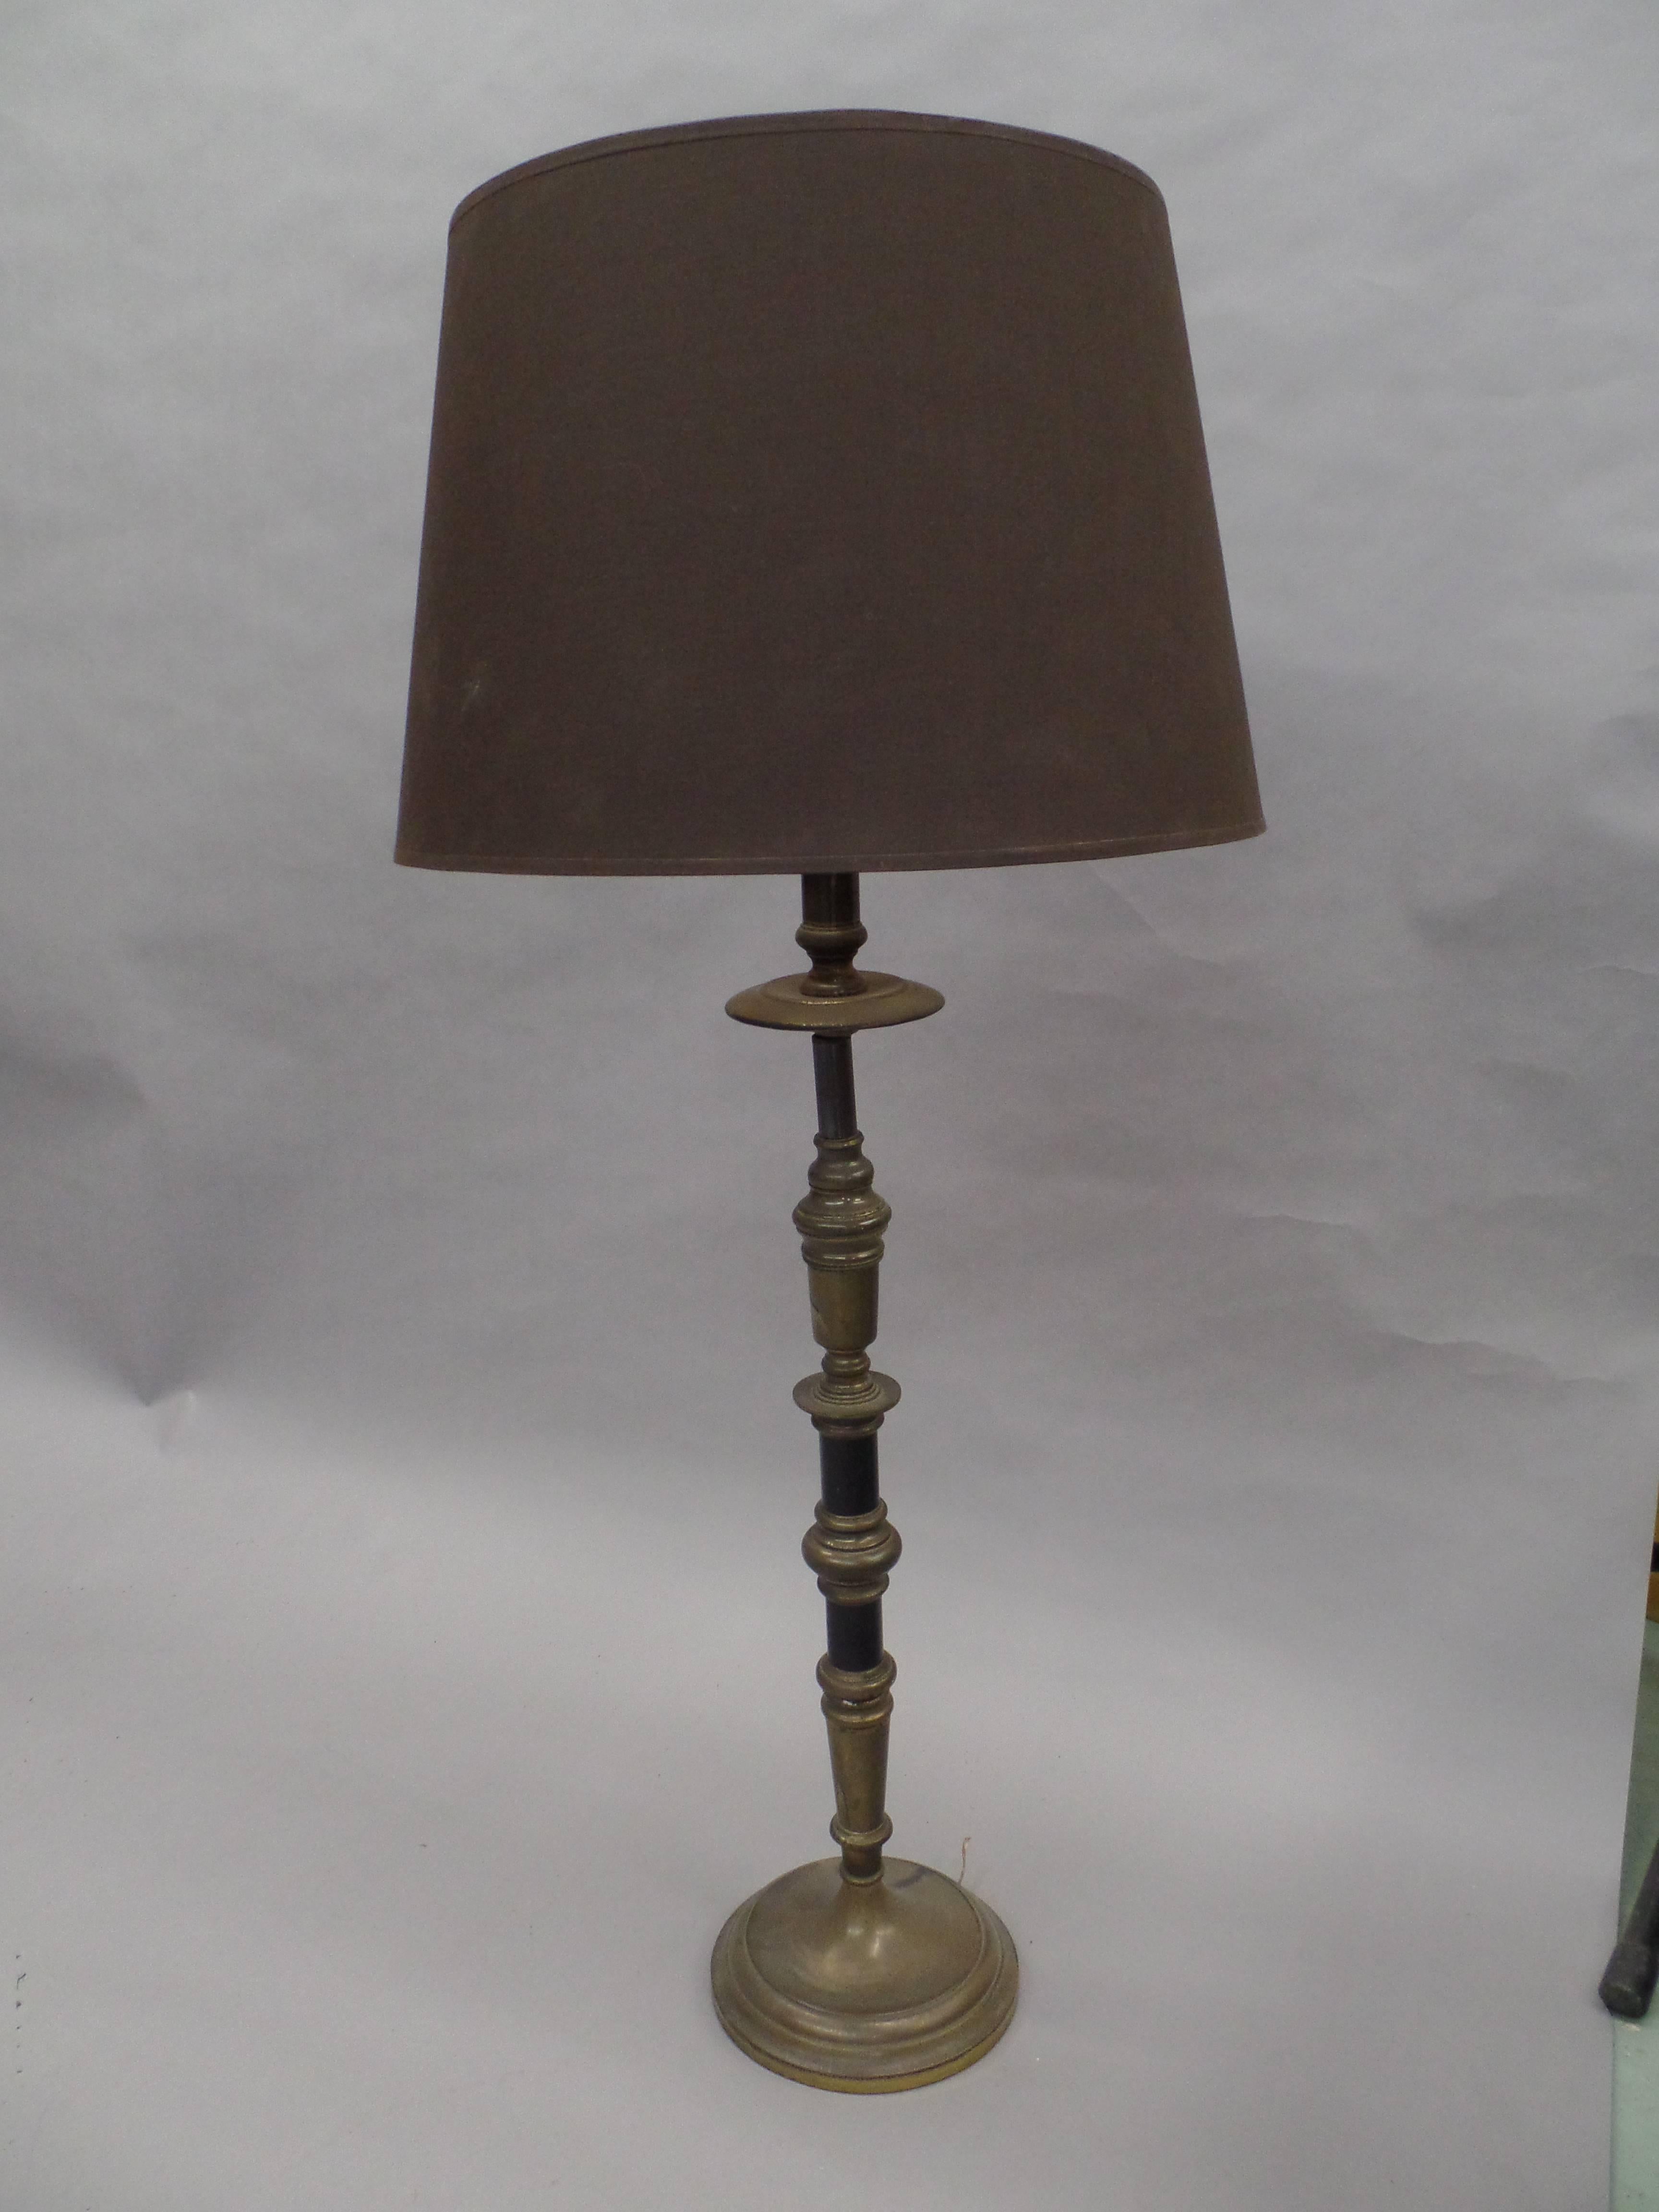 Paire d'élégantes et raffinées lampes de table de forme classique française en forme de chandelier en laiton argenté et émail noir.

Les teintes ne sont utilisées qu'à des fins de démonstration.